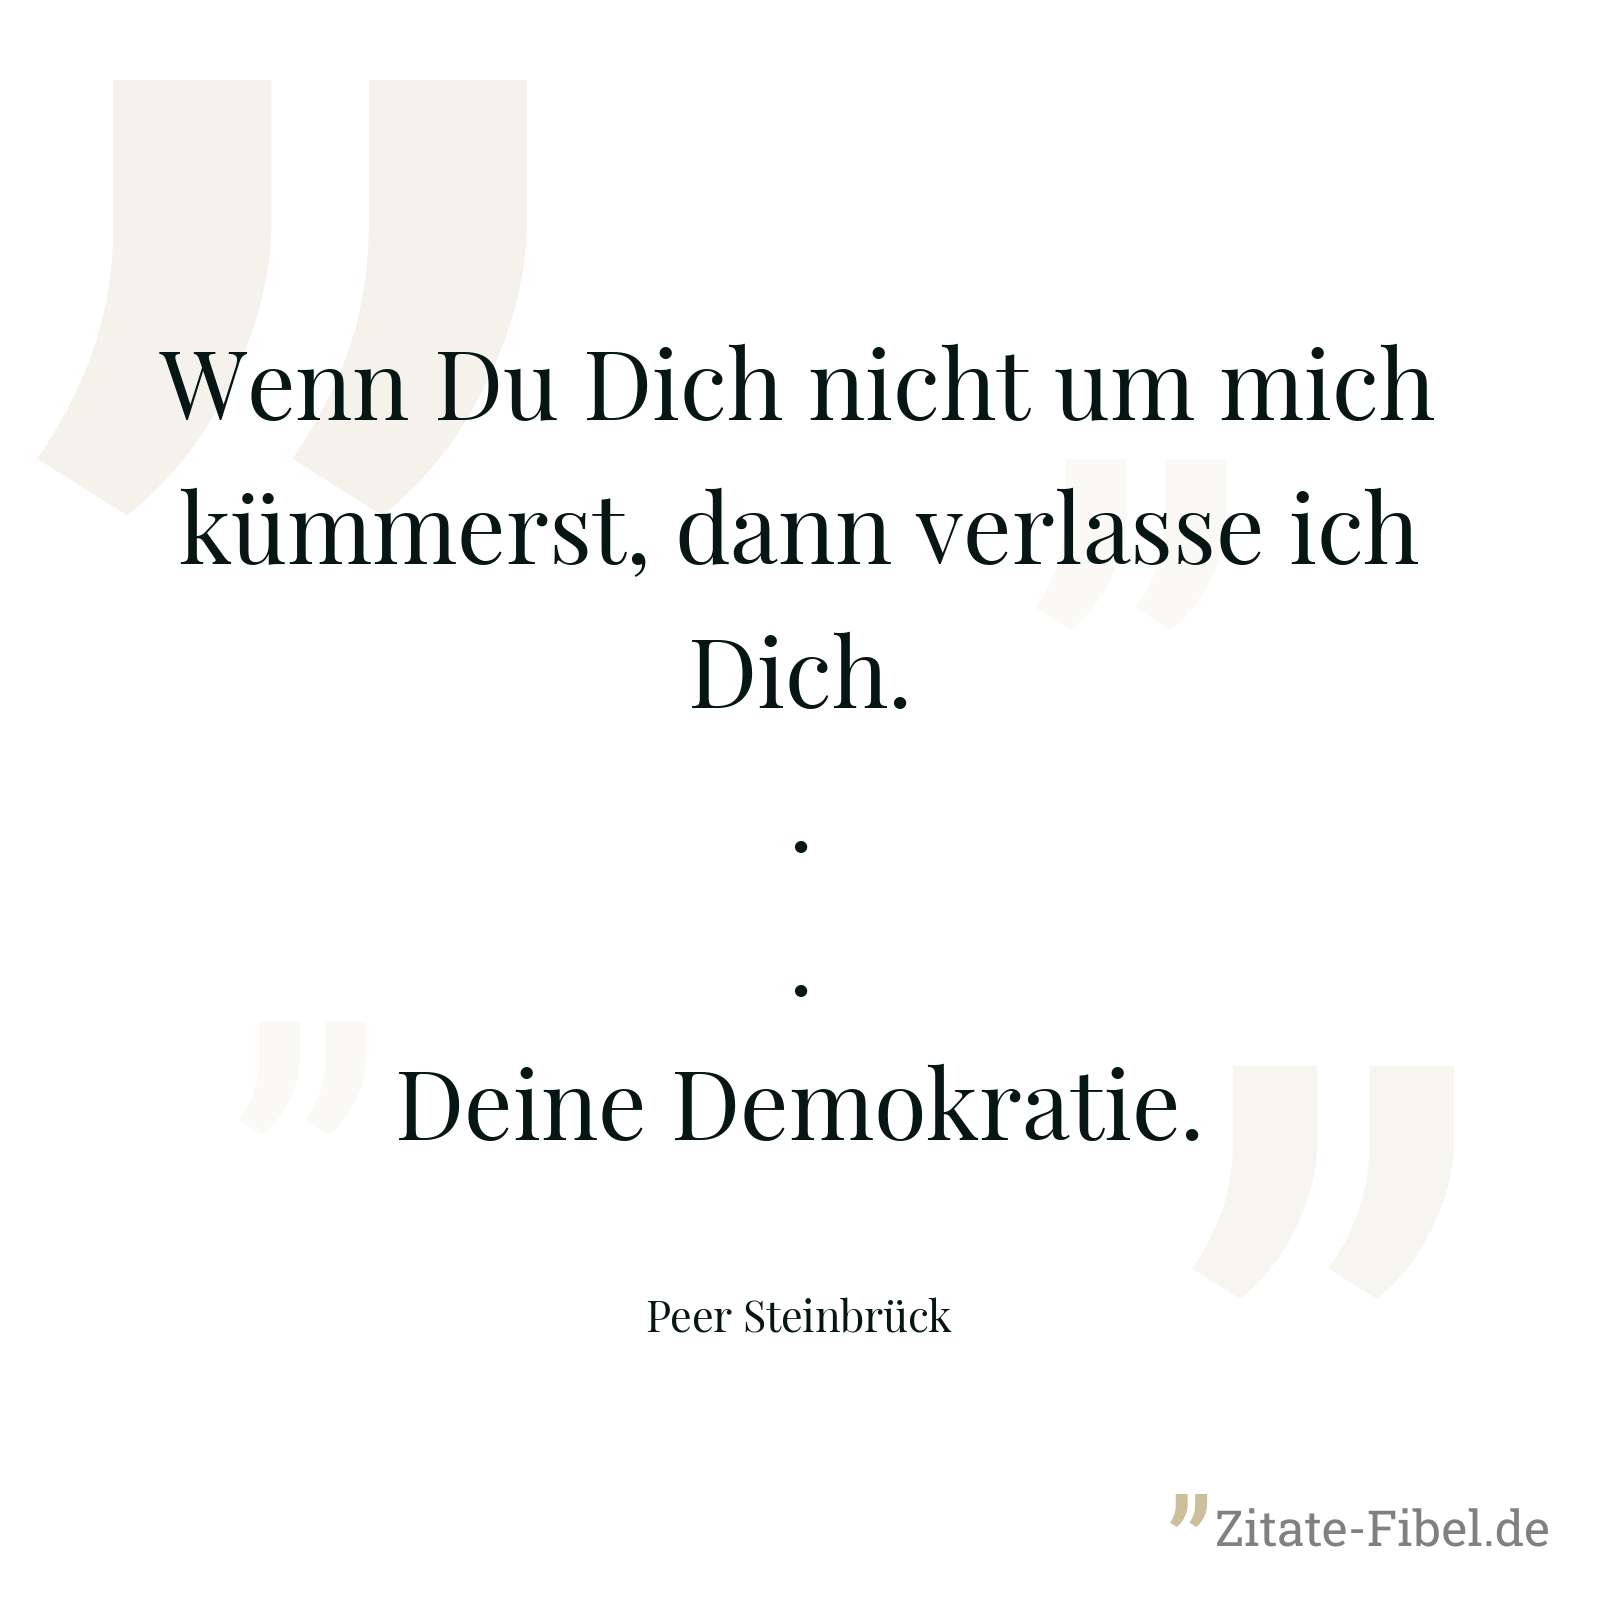 Wenn Du Dich nicht um mich kümmerst, dann verlasse ich Dich...Deine Demokratie. - Peer Steinbrück